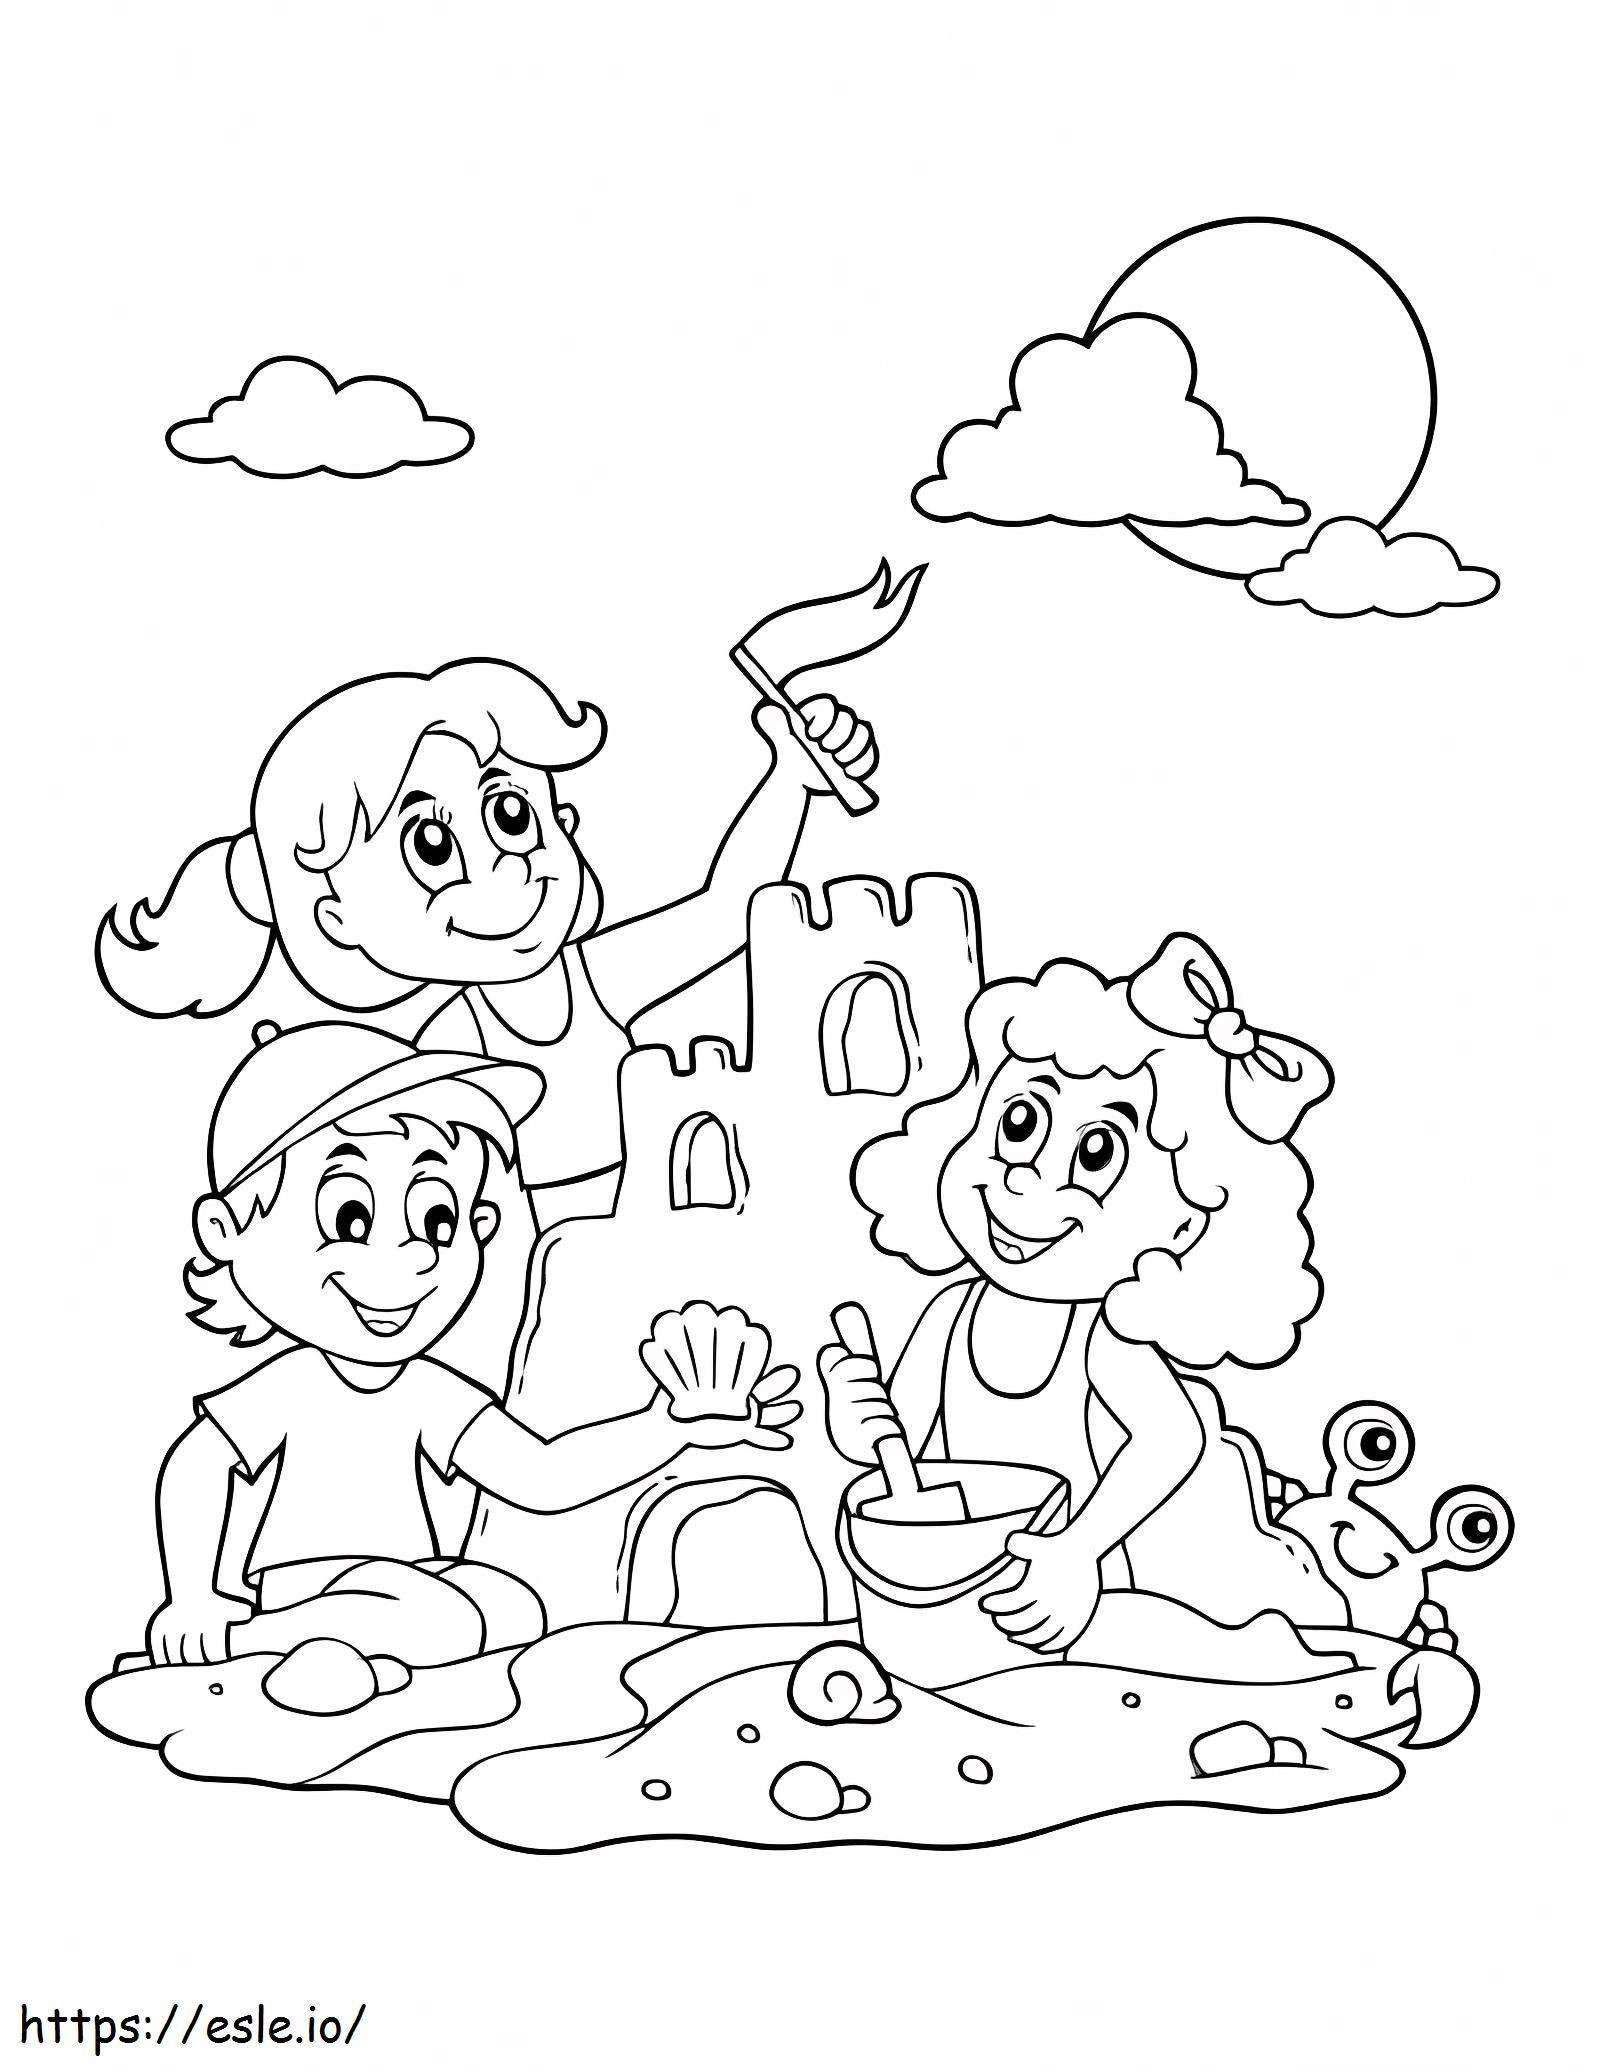 Três crianças constroem castelos de areia para colorir